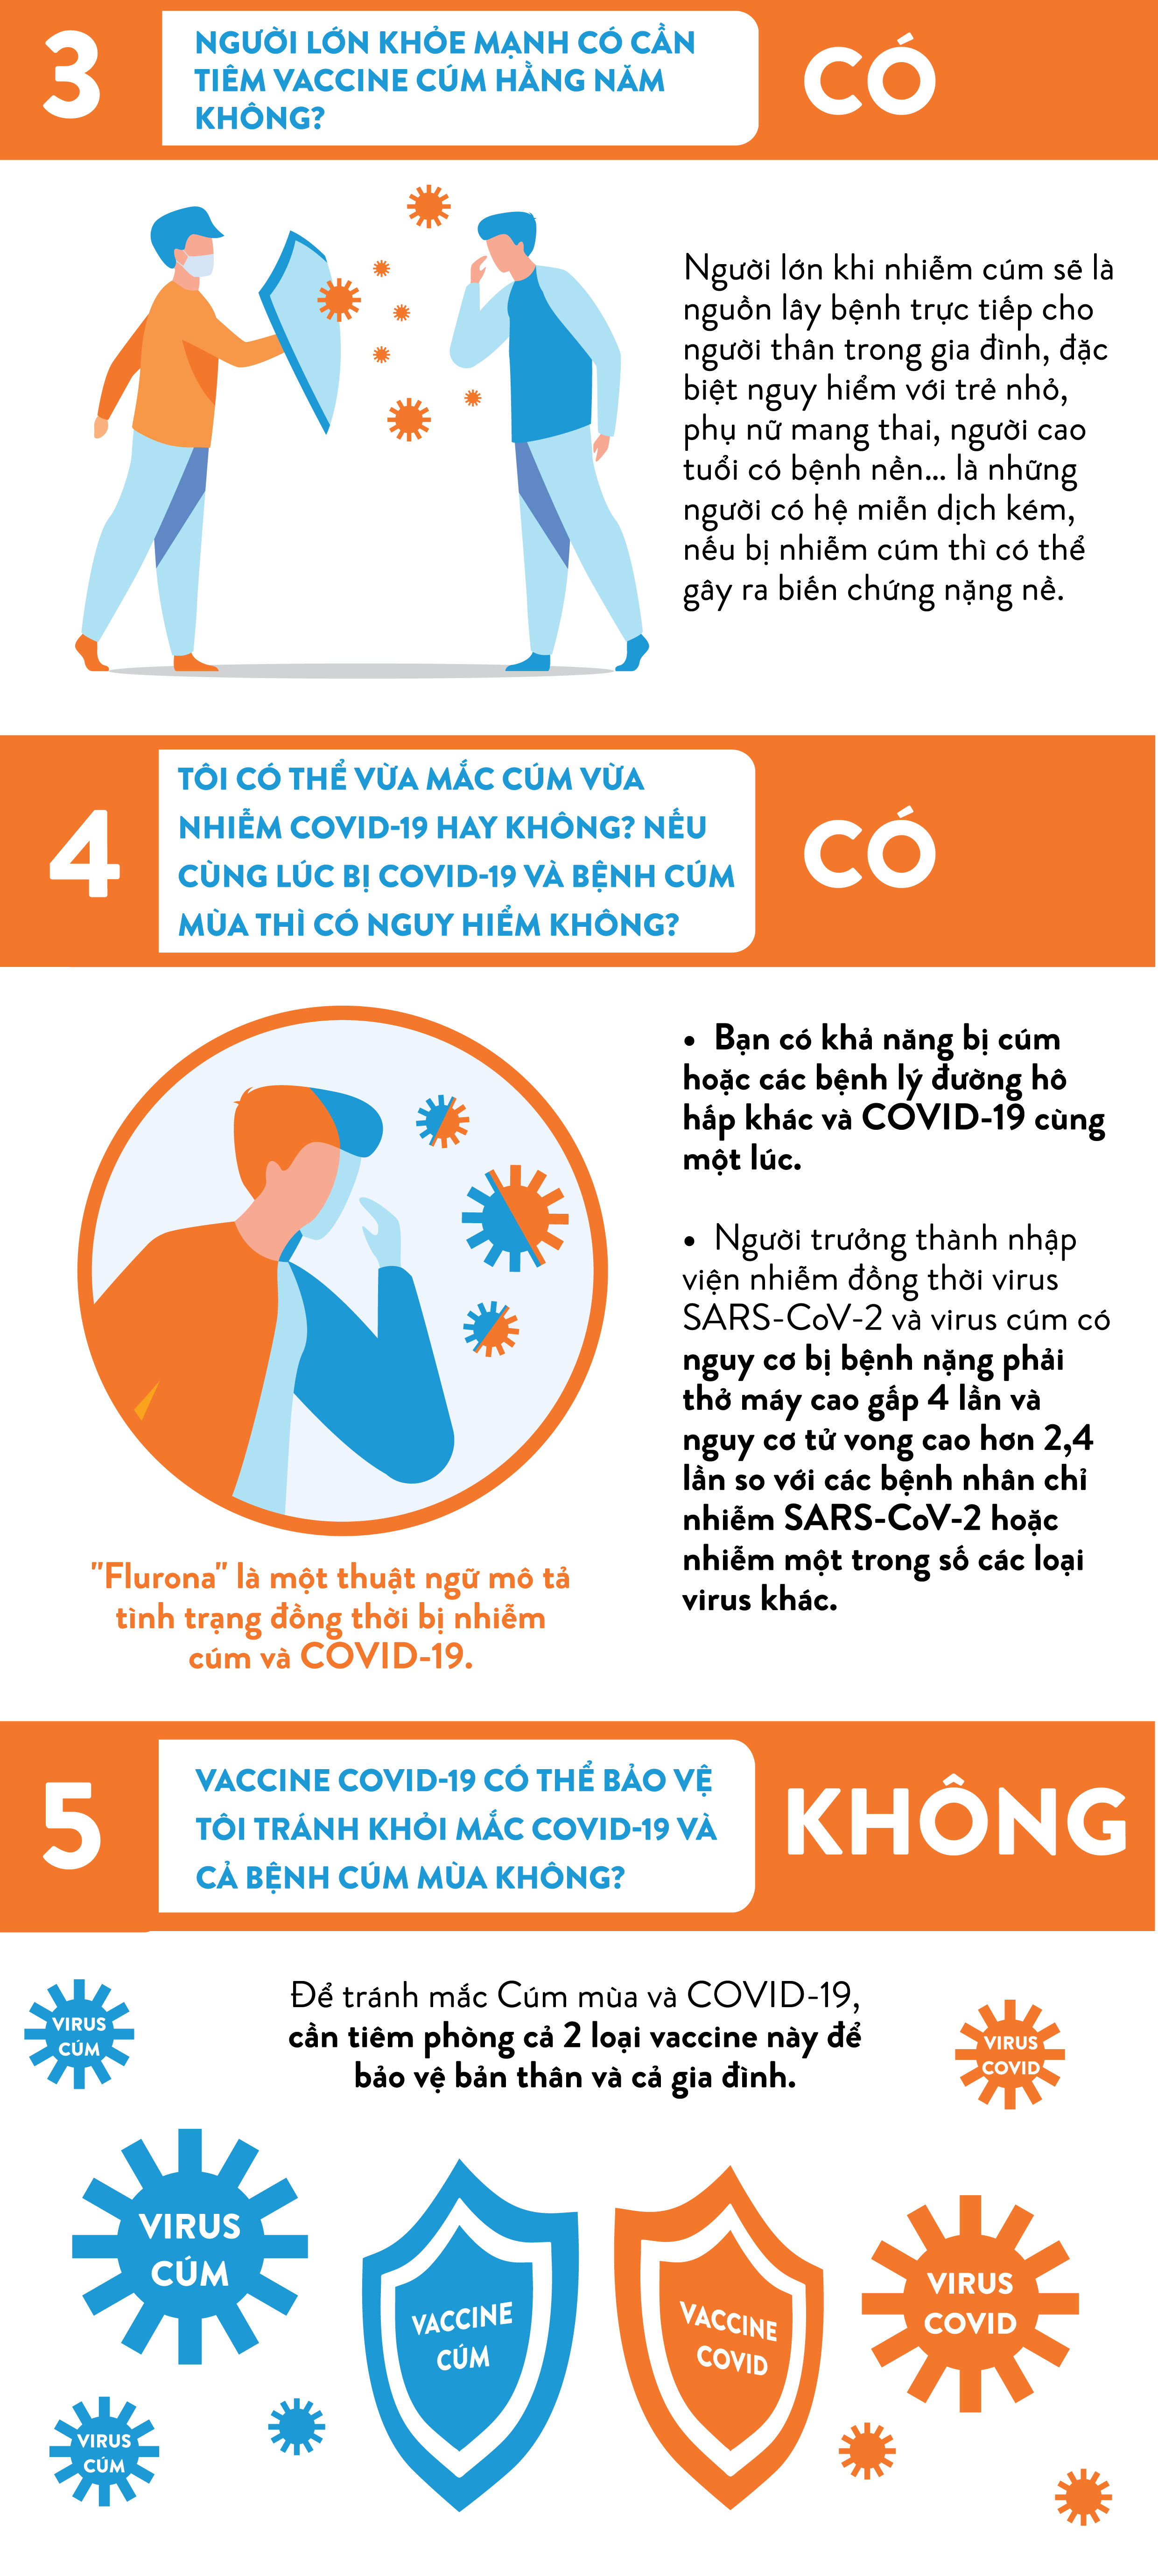 Vaccine cúm